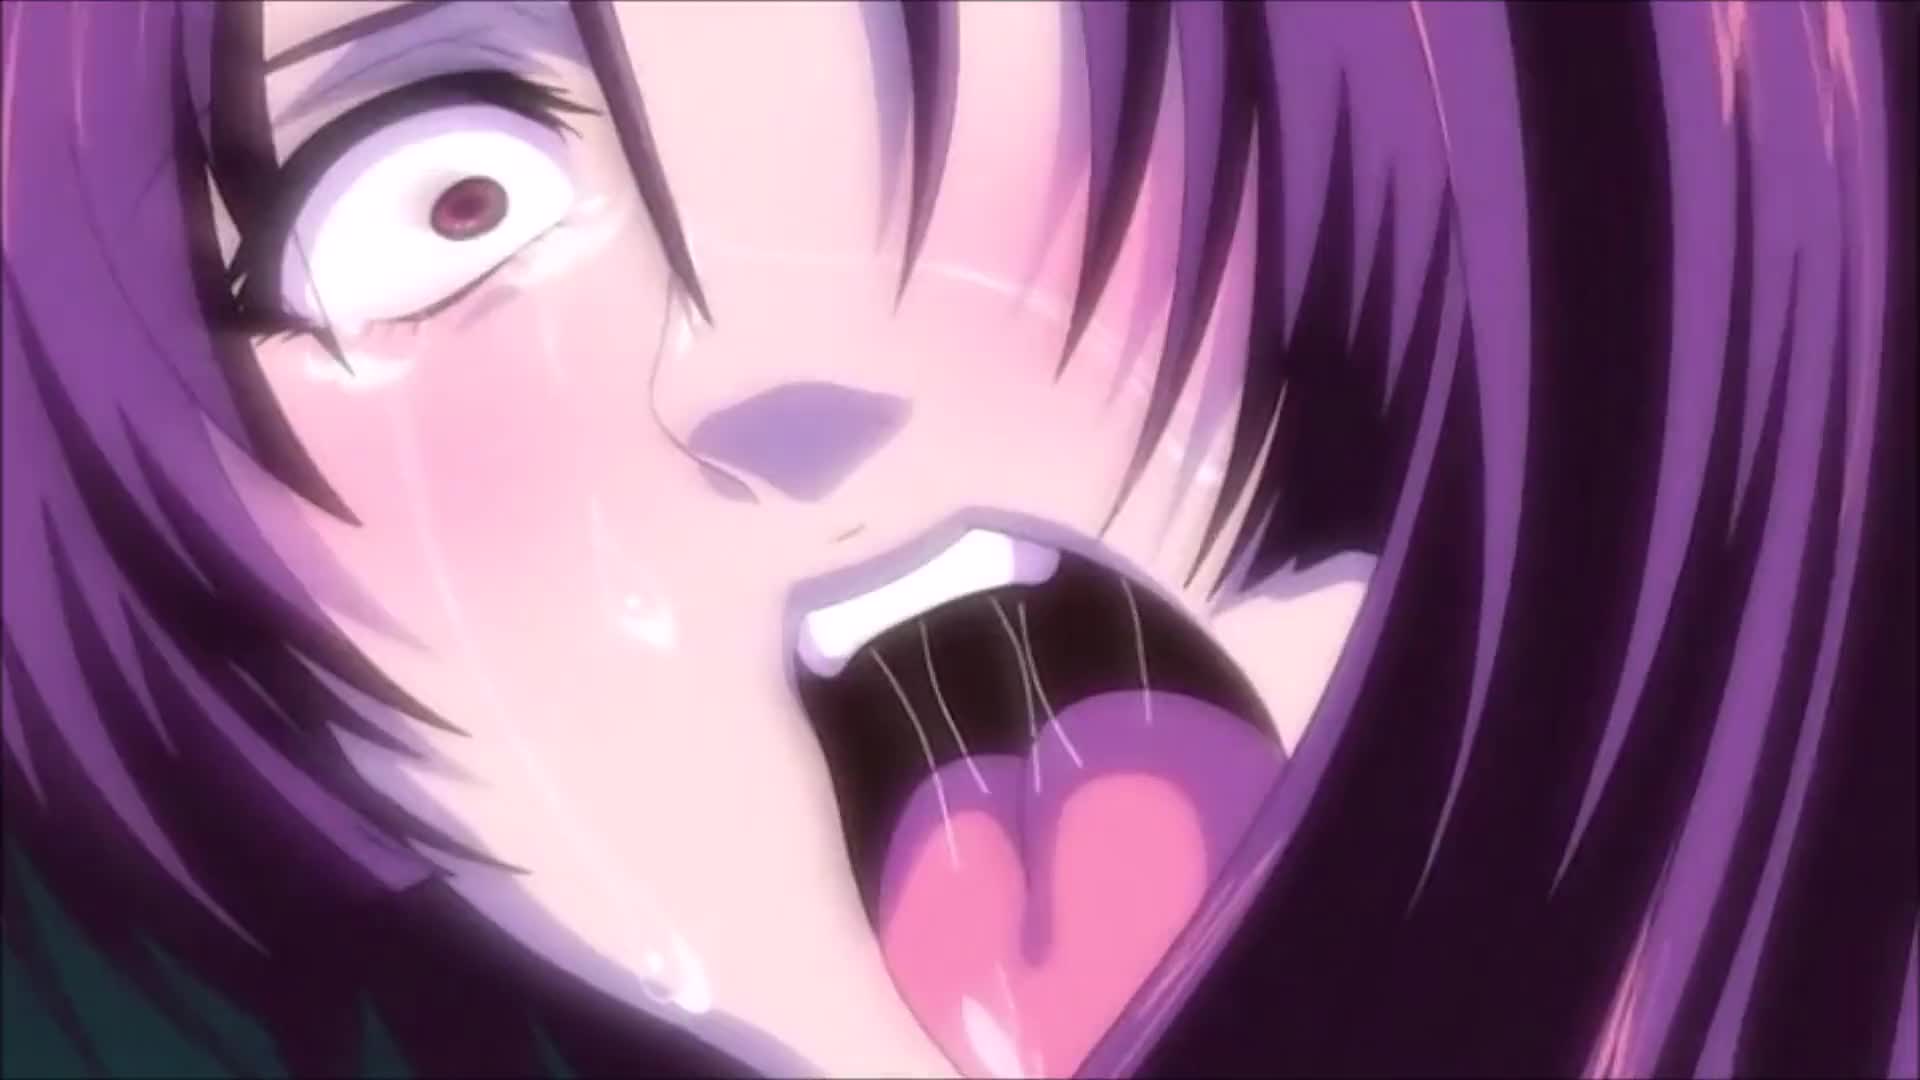 Cute Anime Porn Compilation - Compilation of Hentai Ahegao - Videos - xvix.eu